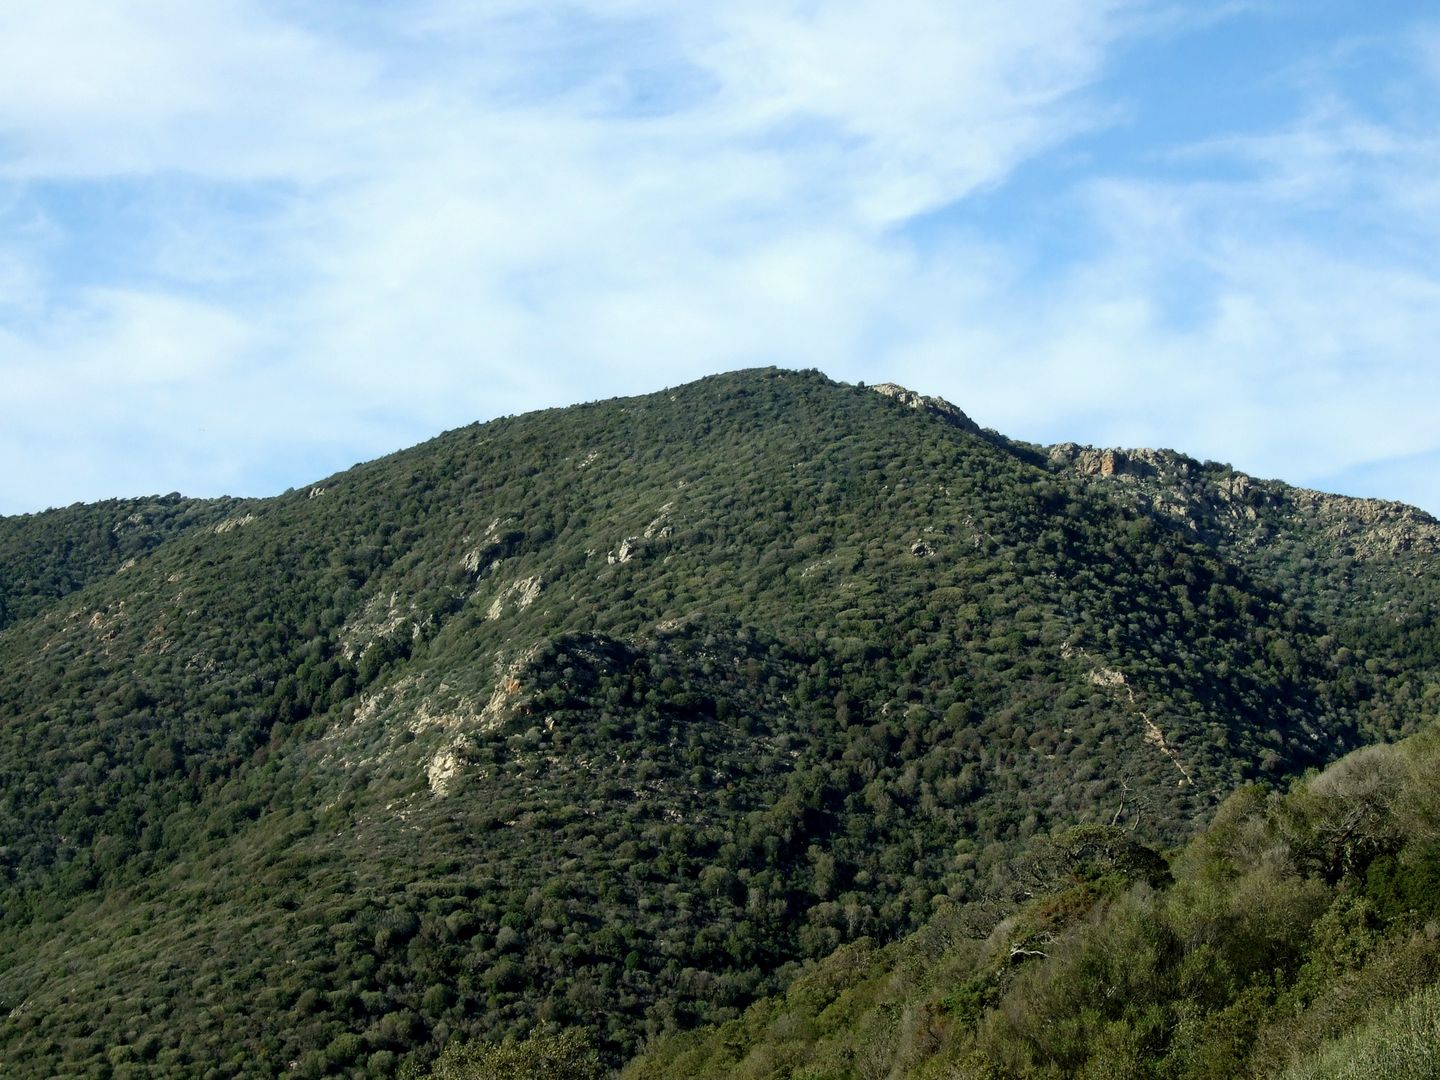 foto propria - il monte Cuccaru, celebre rifugio dei banditi di Gallura